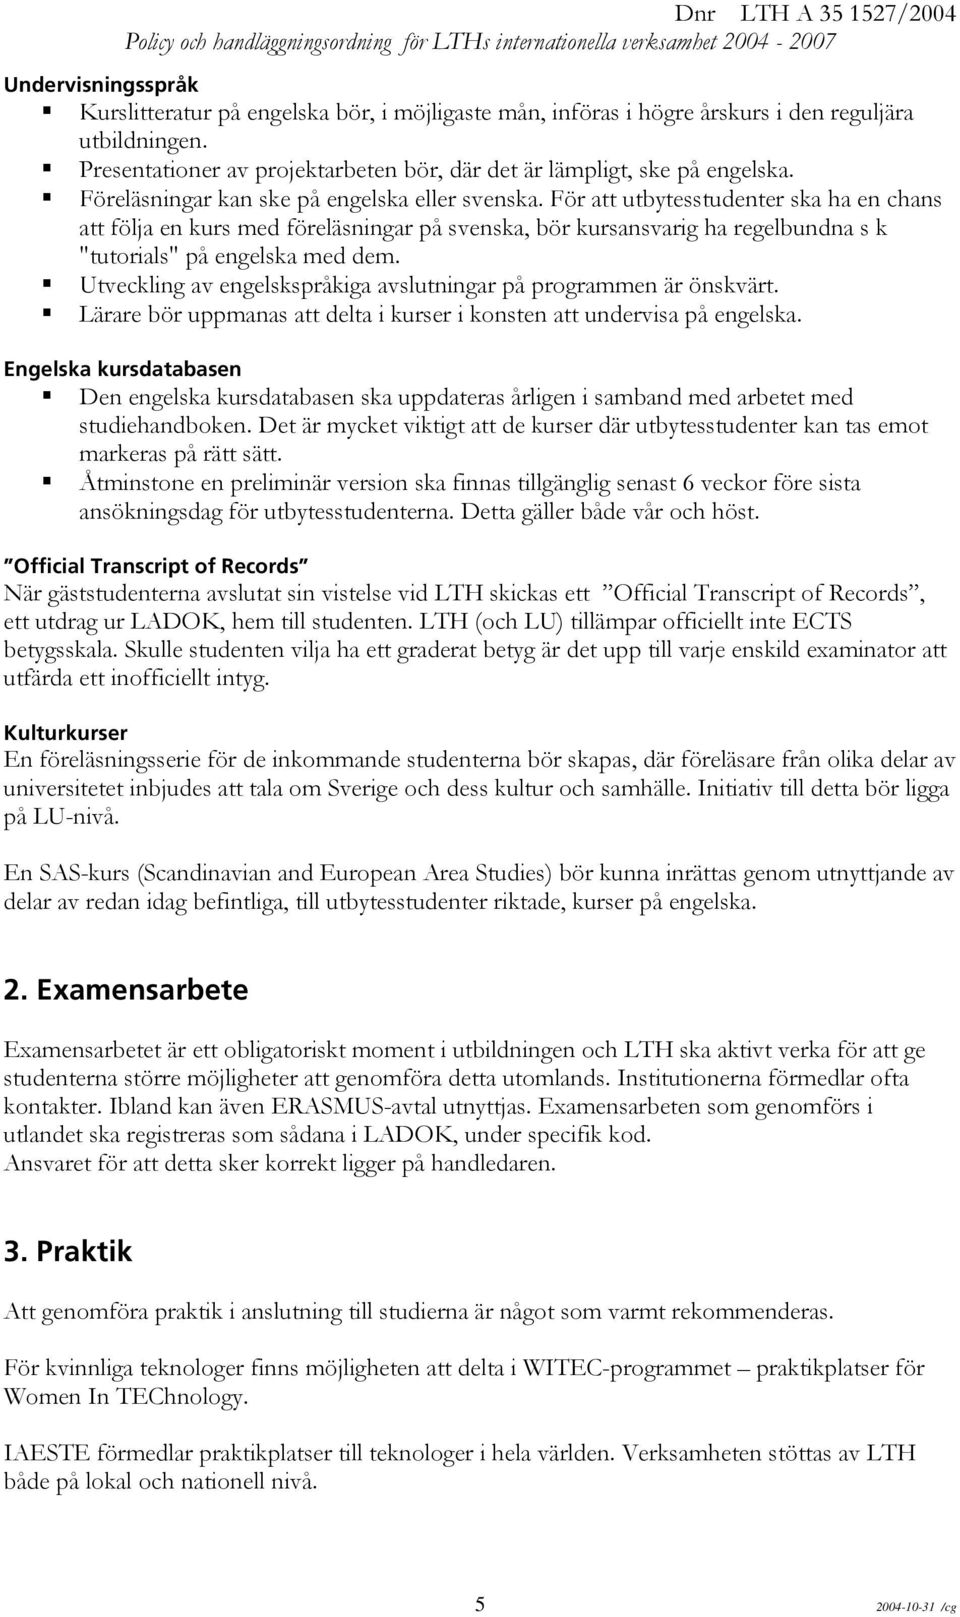 För att utbytesstudenter ska ha en chans att följa en kurs med föreläsningar på svenska, bör kursansvarig ha regelbundna s k "tutorials" på engelska med dem.